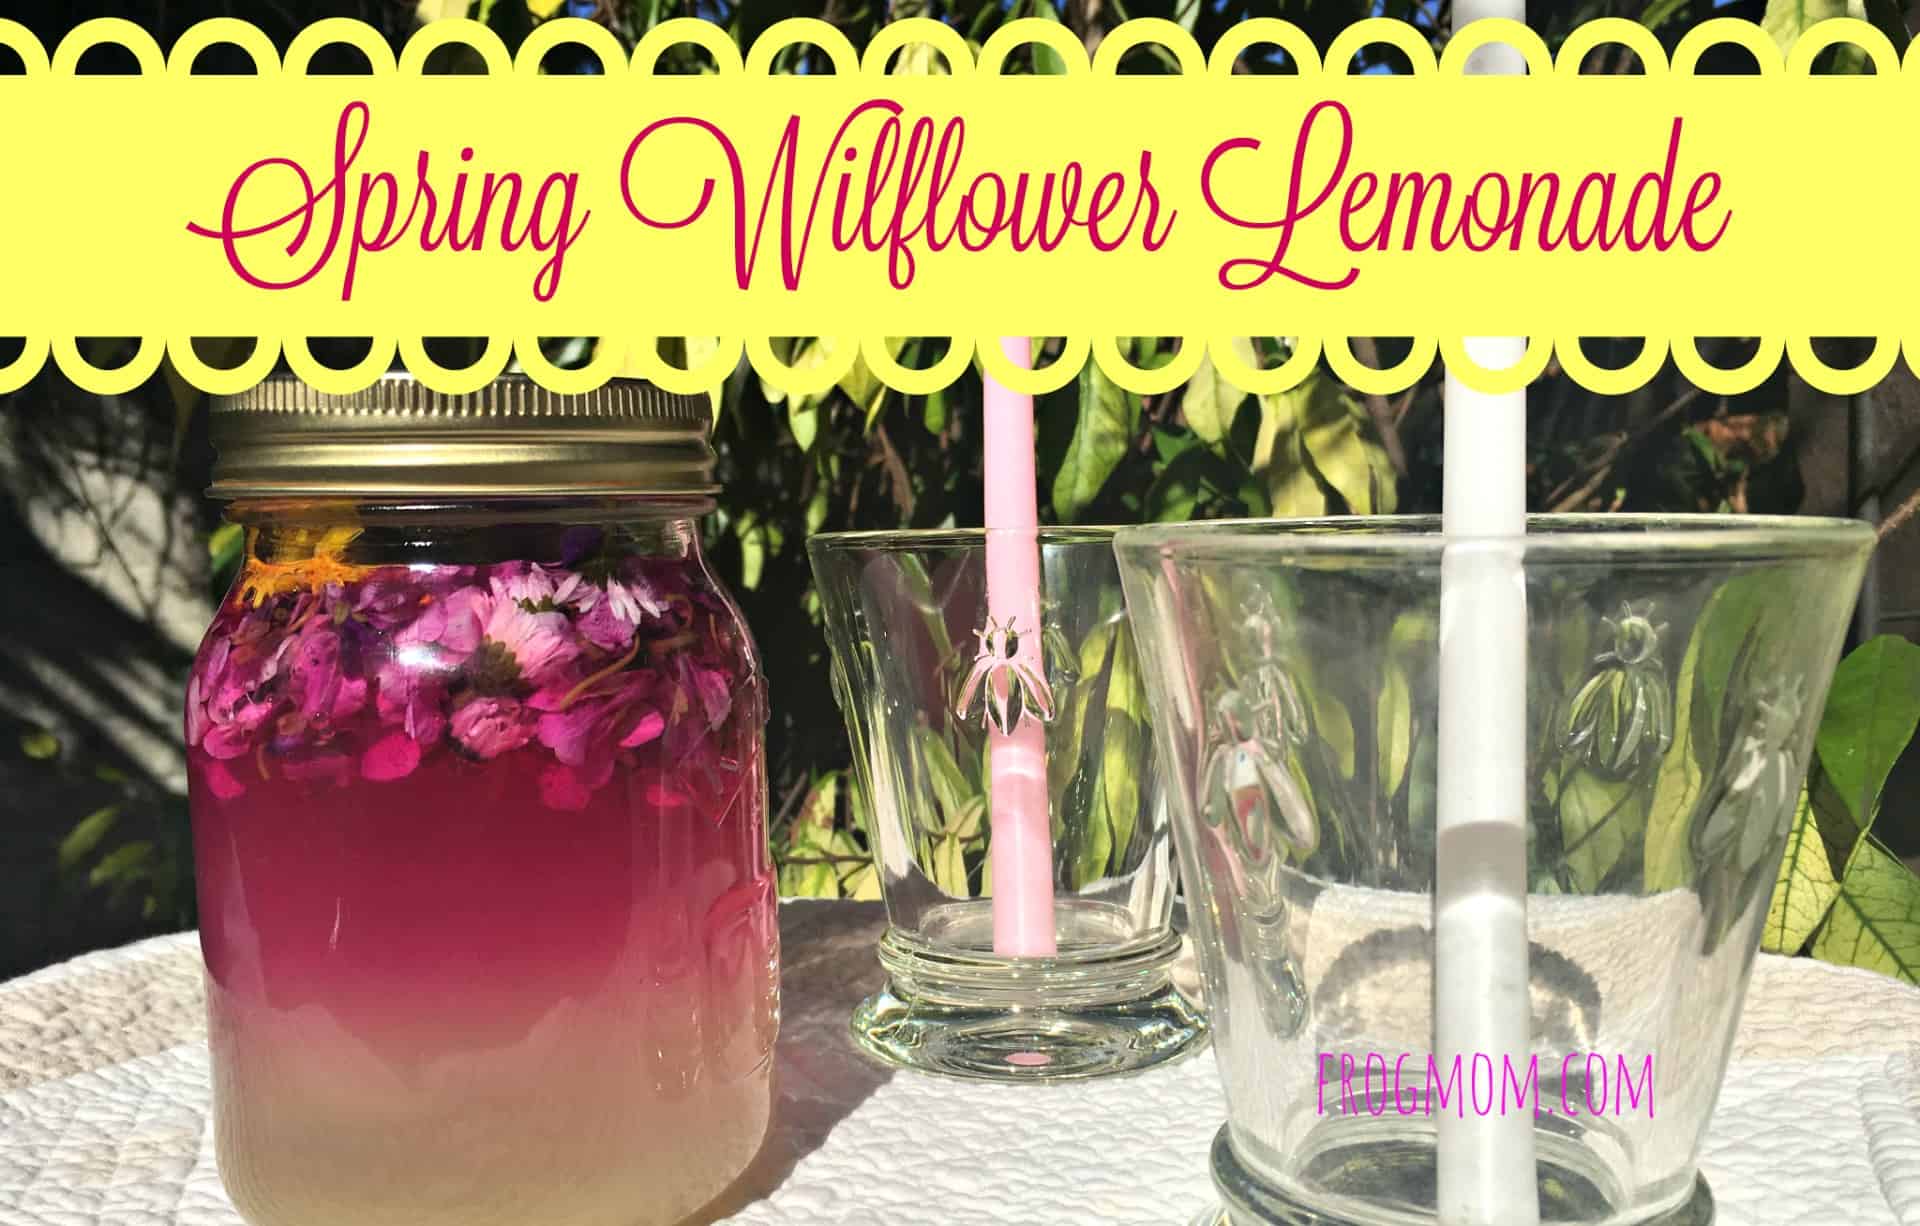 Spring wildflower lemonade